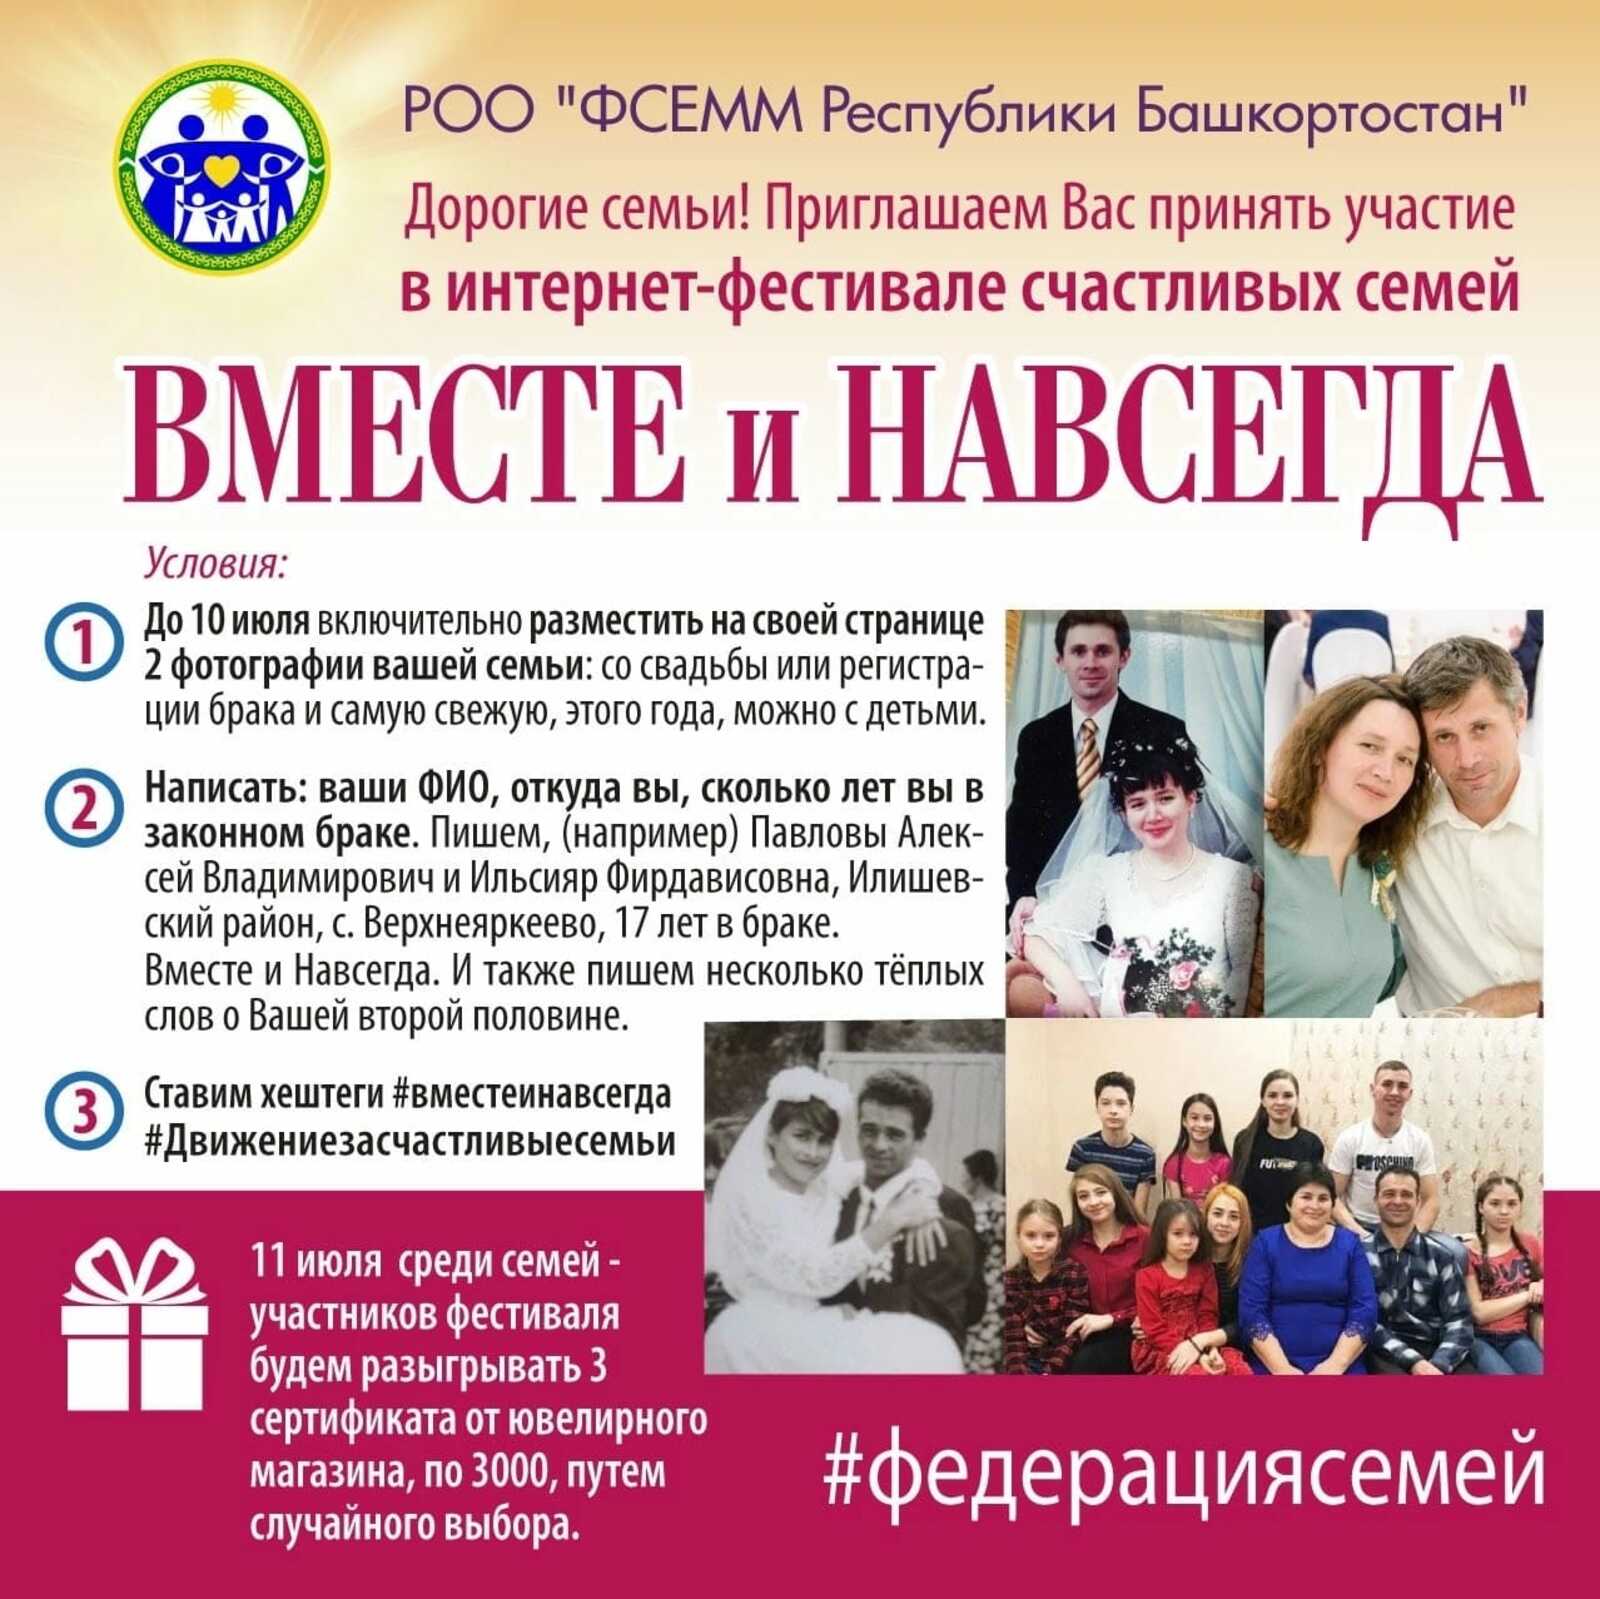 Федерация семей Республики Башкортостан проводит интернет-фестиваль счастливых семей " Вместе и навсегда"